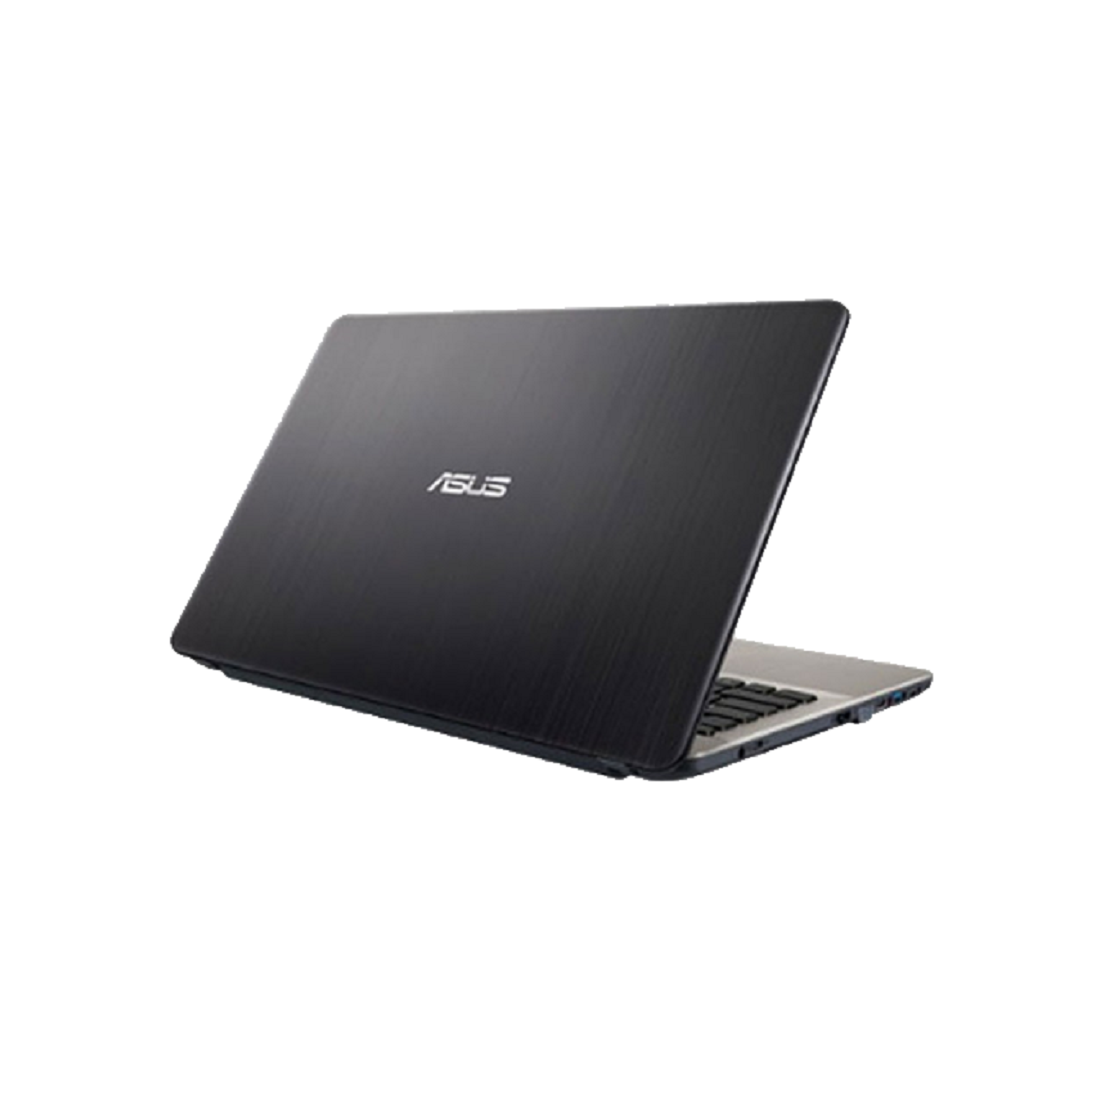 Máy xách tay/ Laptop Asus X441UA-WX027 (I3-6100U) (Đen)-Thế